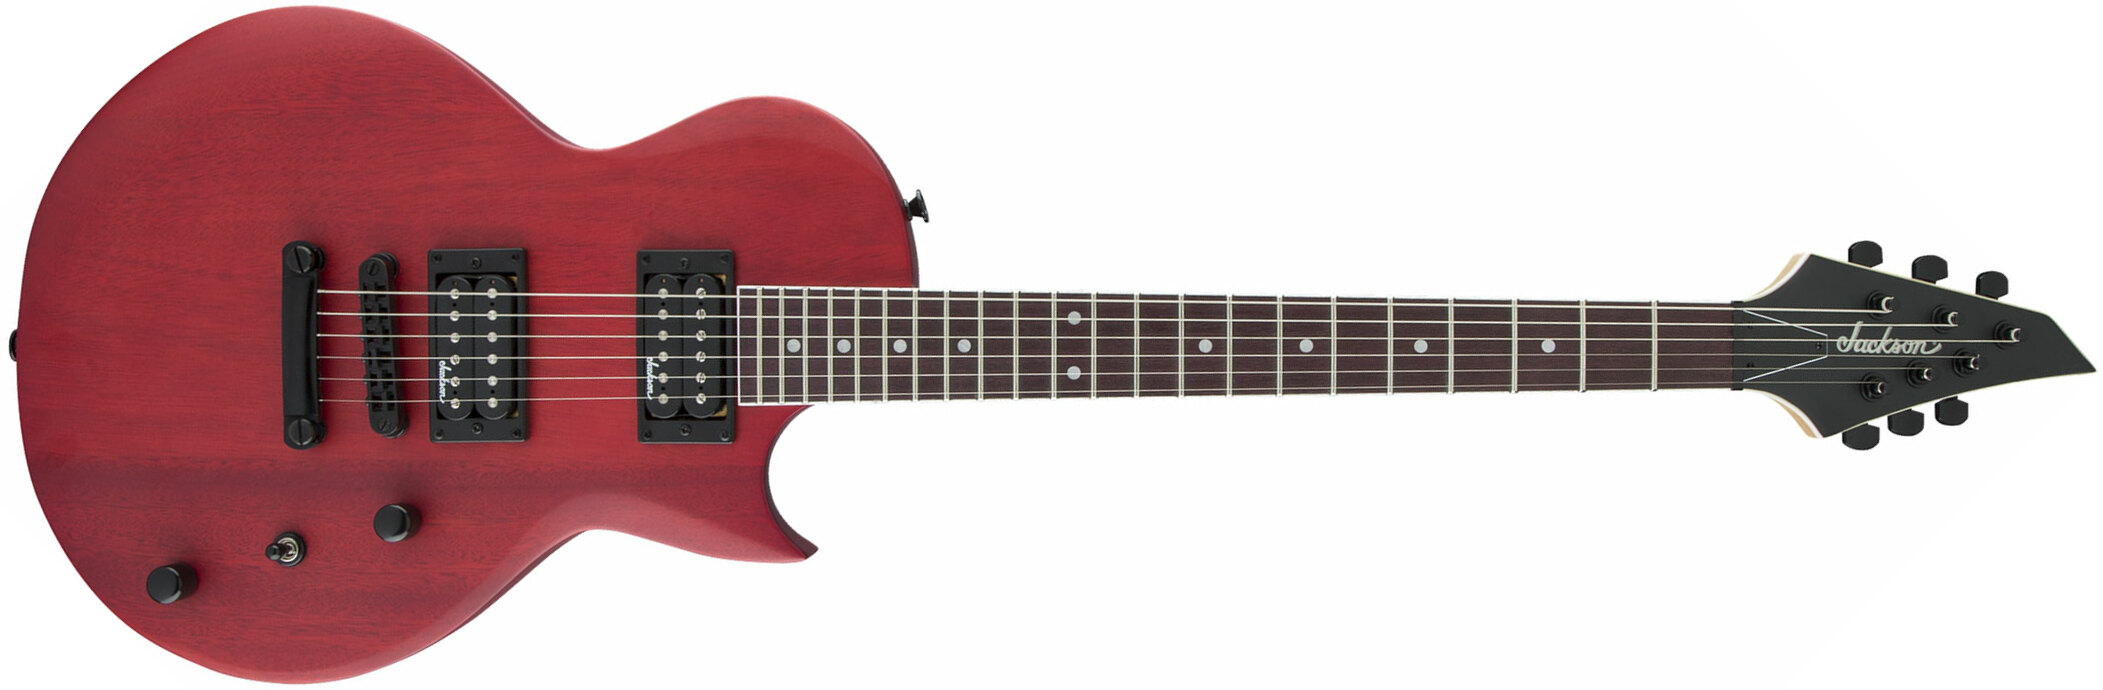 Jackson Monarkh Sc Js22 2h Ht Ama - Red Stain - Guitarra eléctrica de corte único. - Main picture